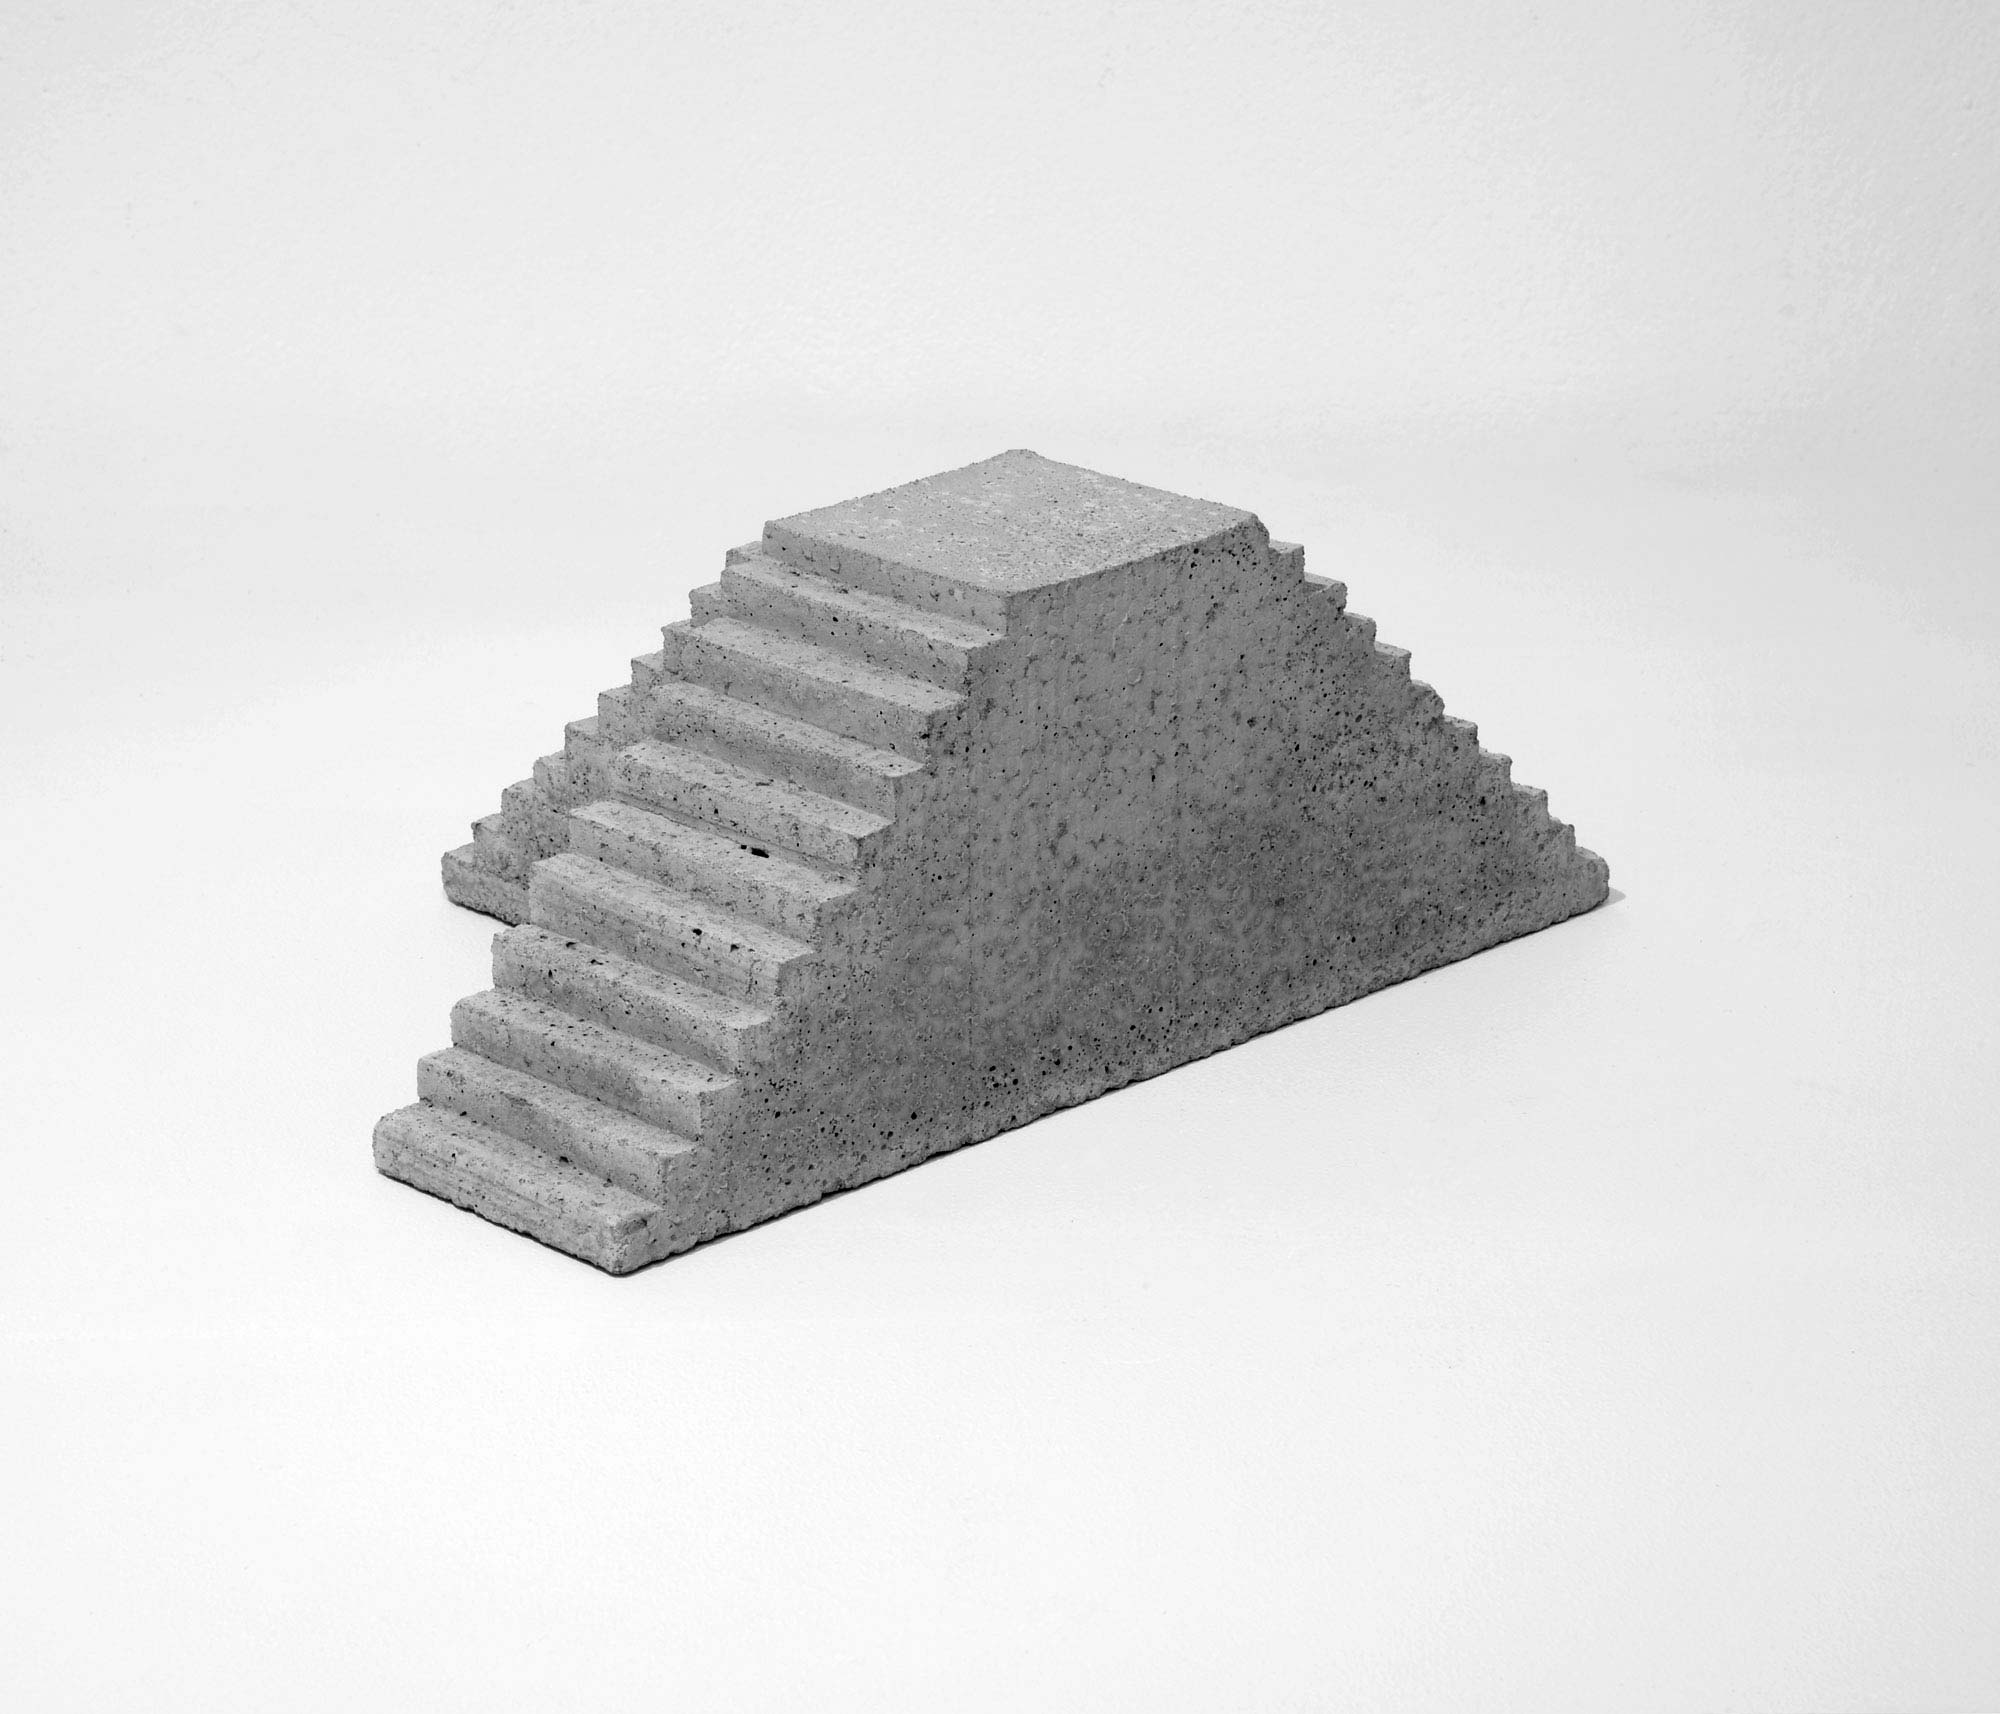 mattia listowski art design objet décoration sculpture béton moulage micro architecture maquette escalier triple édition limitée numérotée signée paris bruxelles 2021